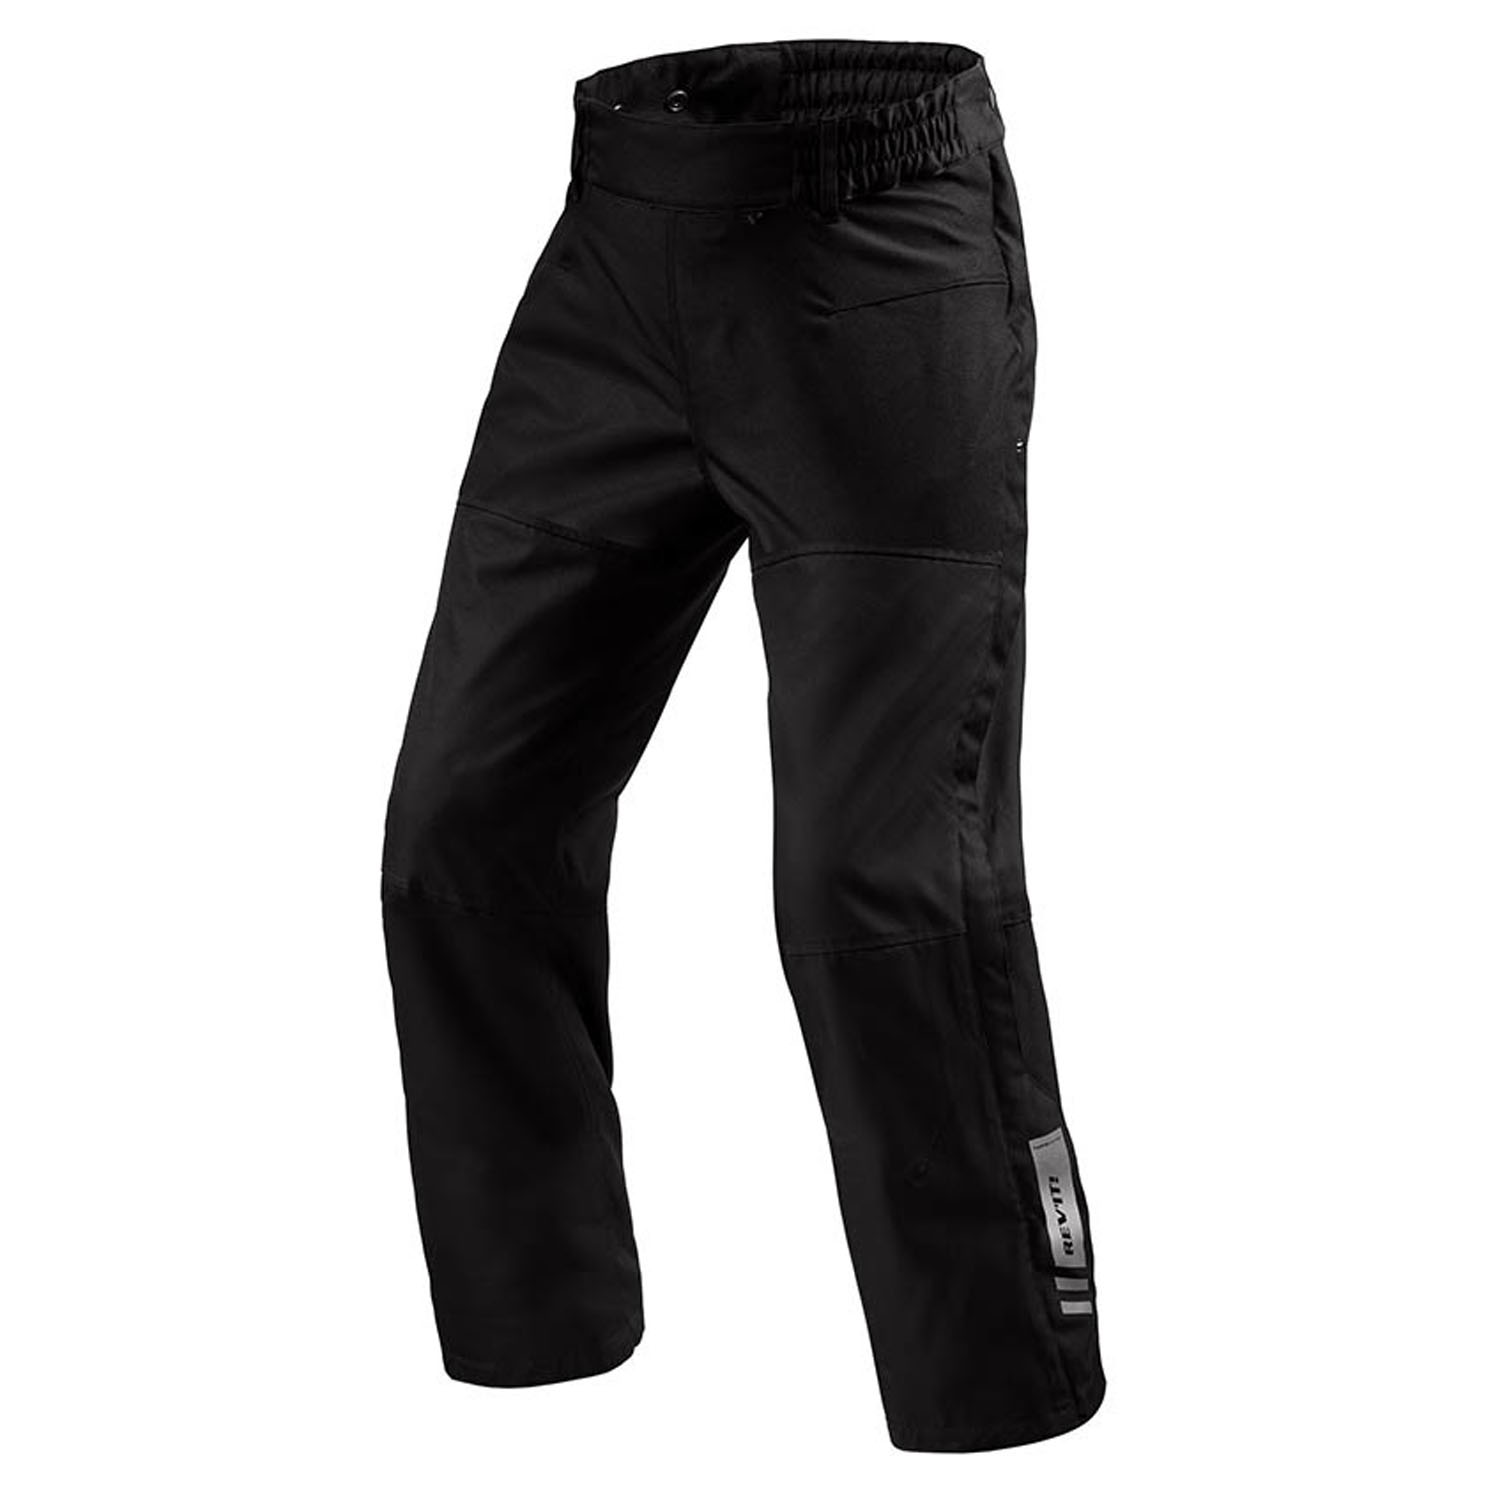 Image of REV'IT! Pants Axis 2 H2O Black Long Motorcycle Pants Talla 2XL